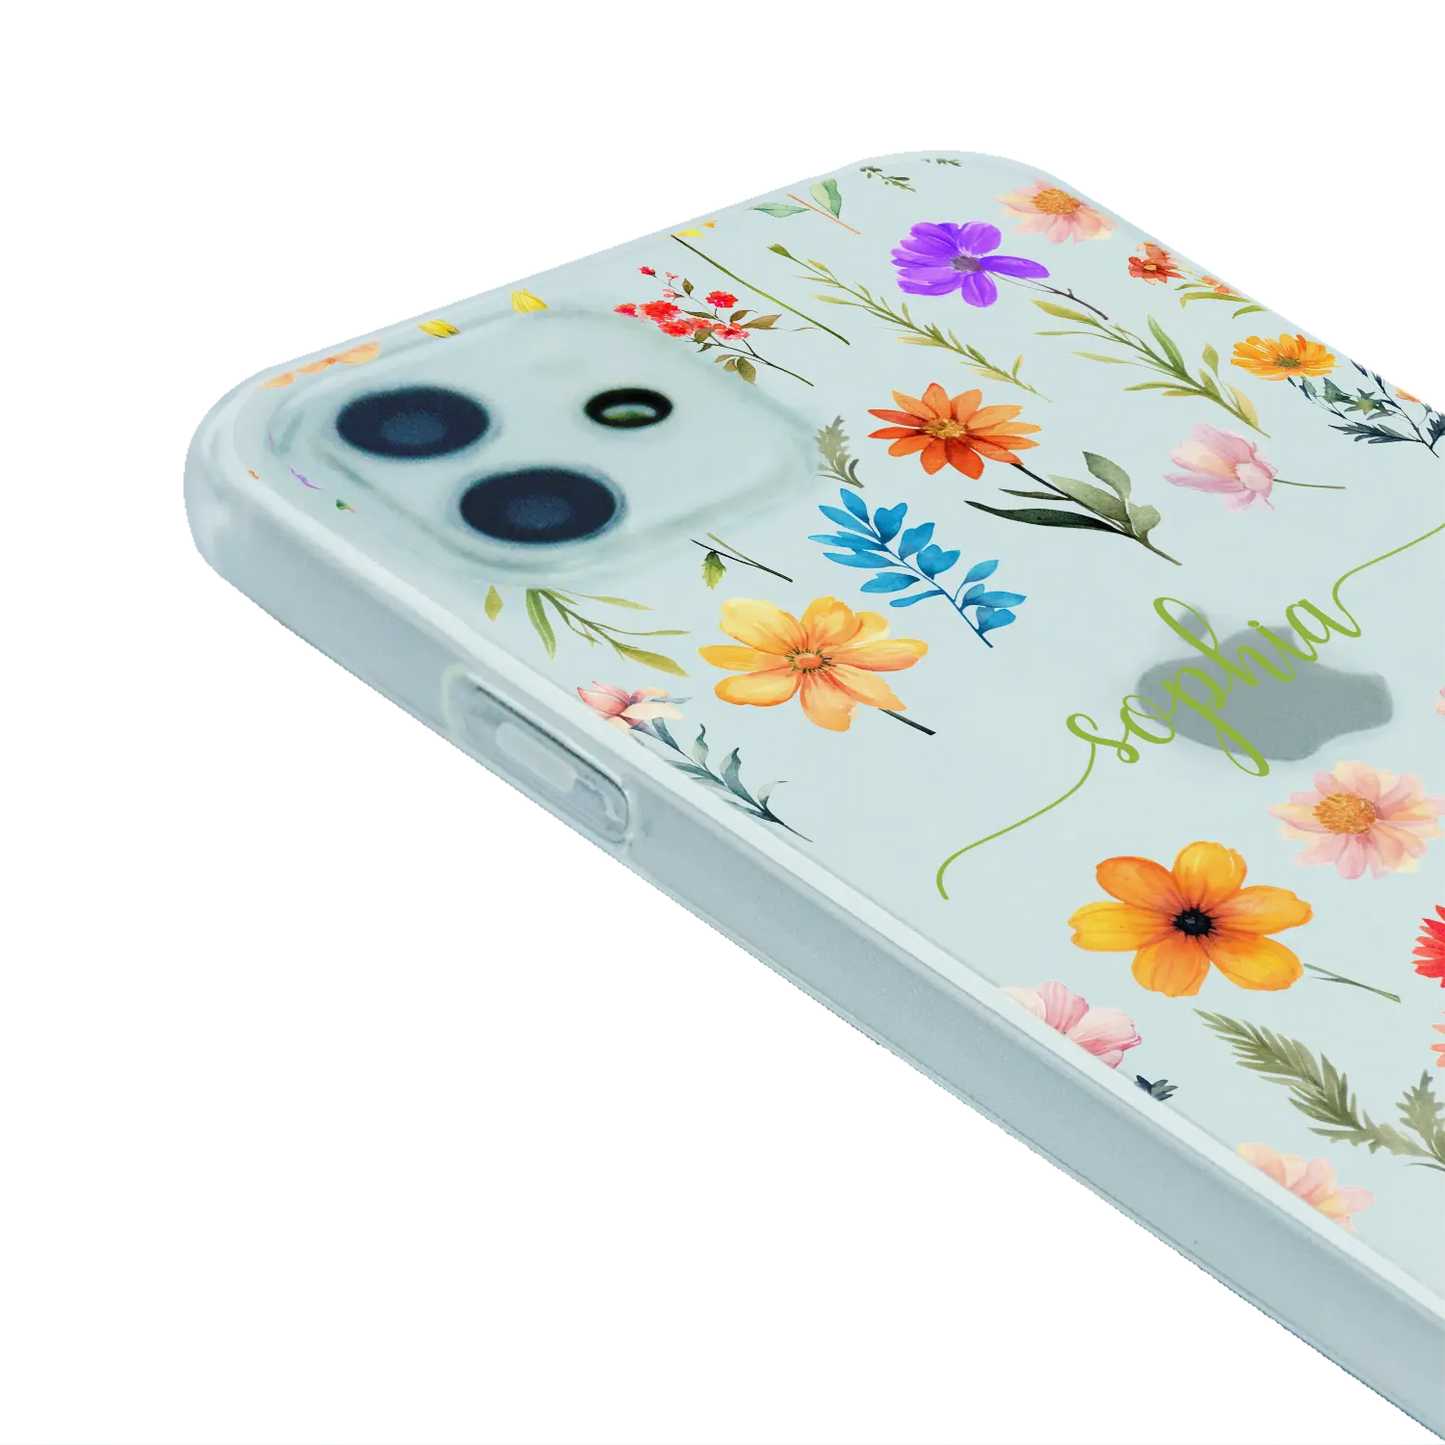 Flowers - Custom Galaxy A case